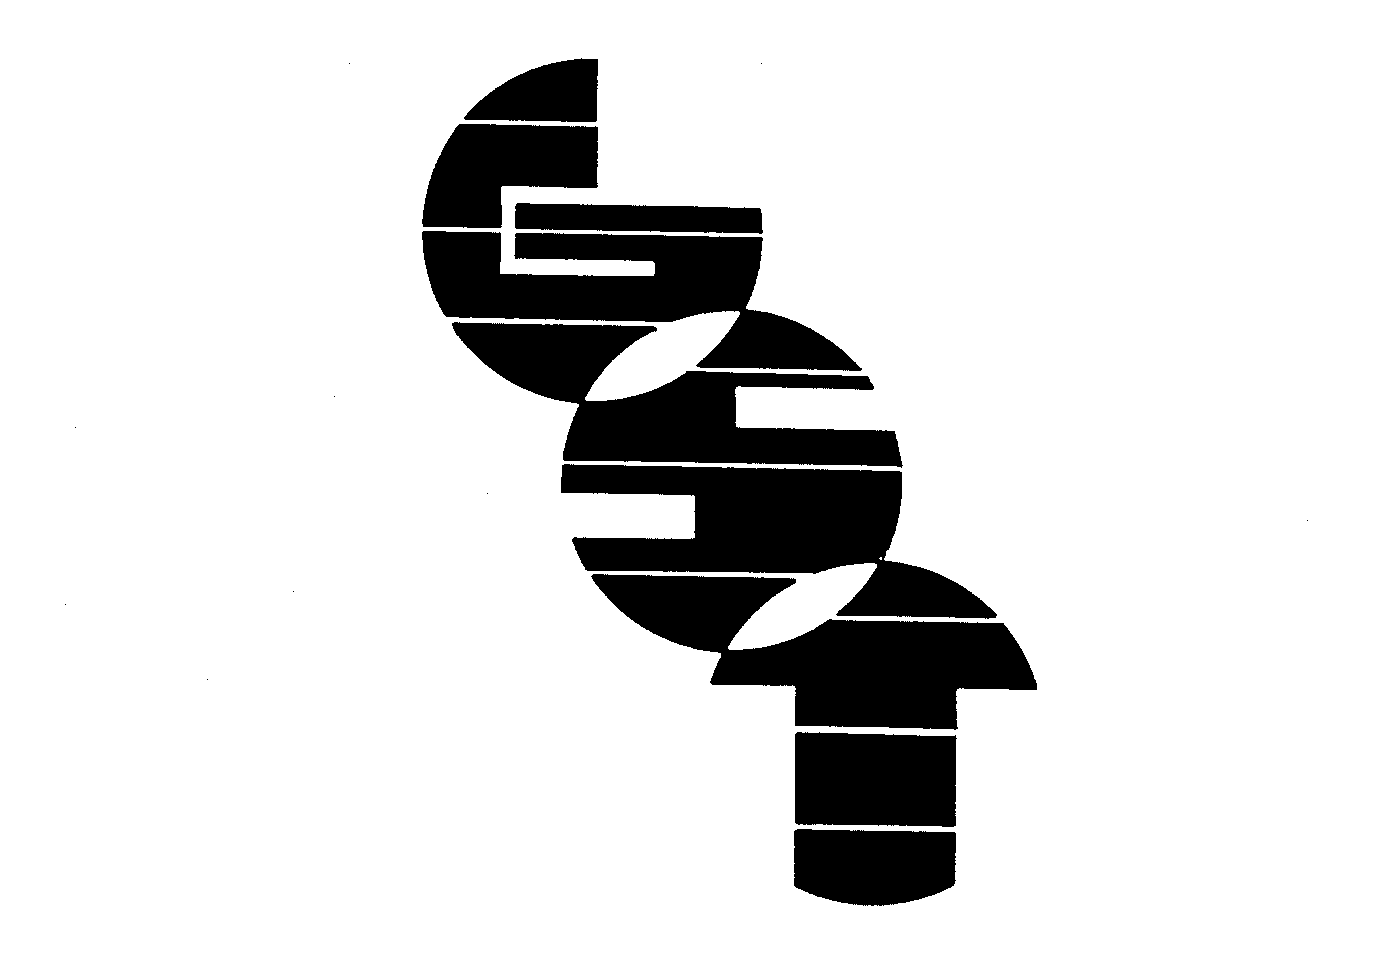 Trademark Logo GST